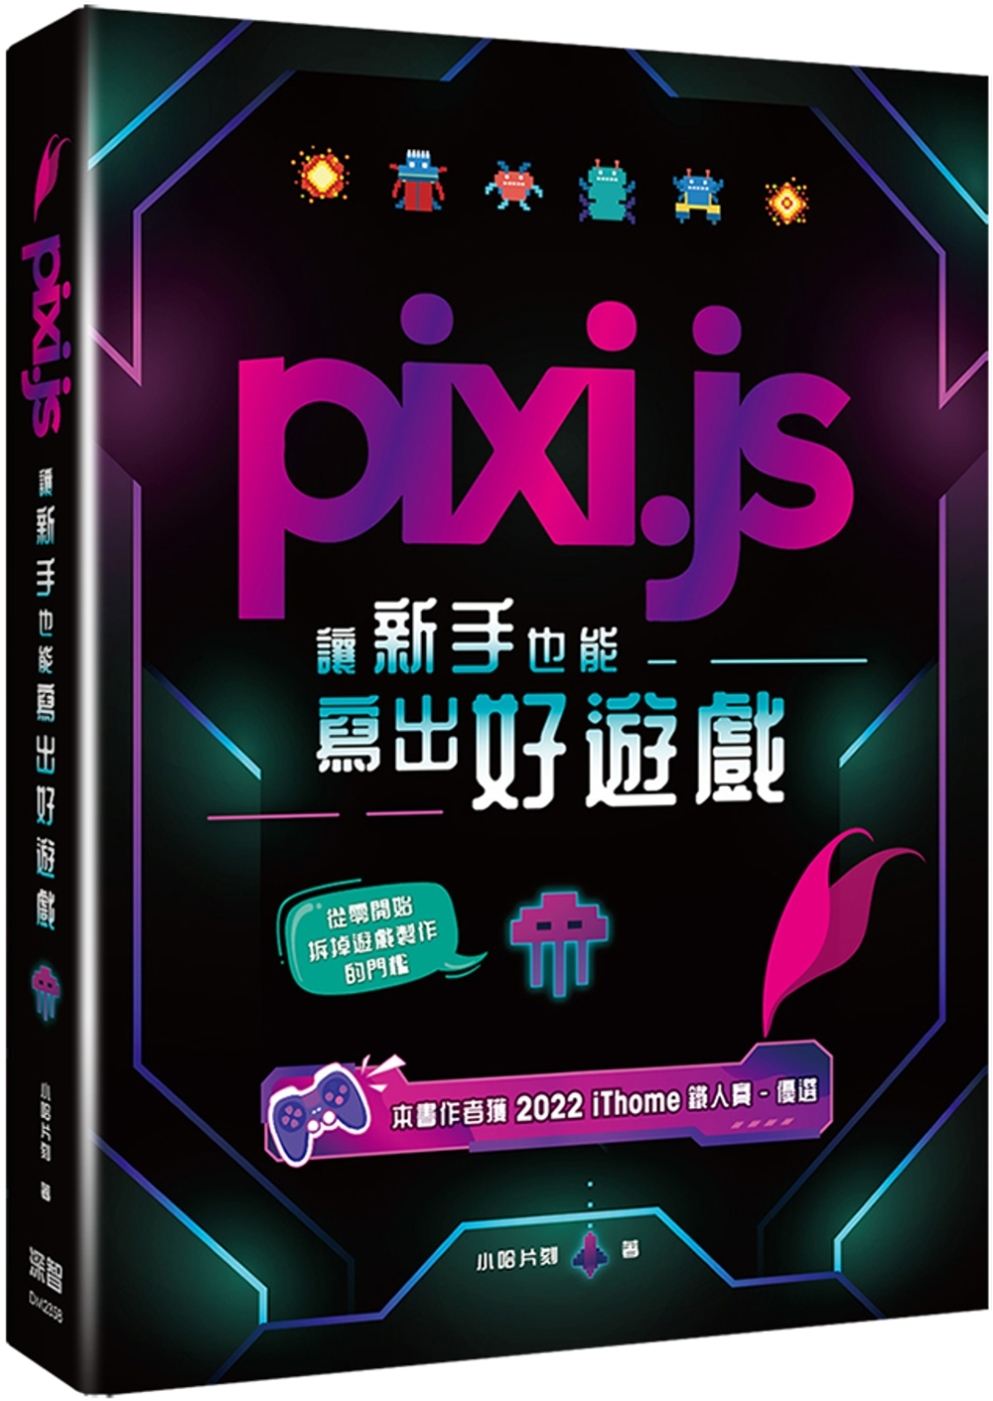 Pixi.js讓新手也能寫出好遊戲 